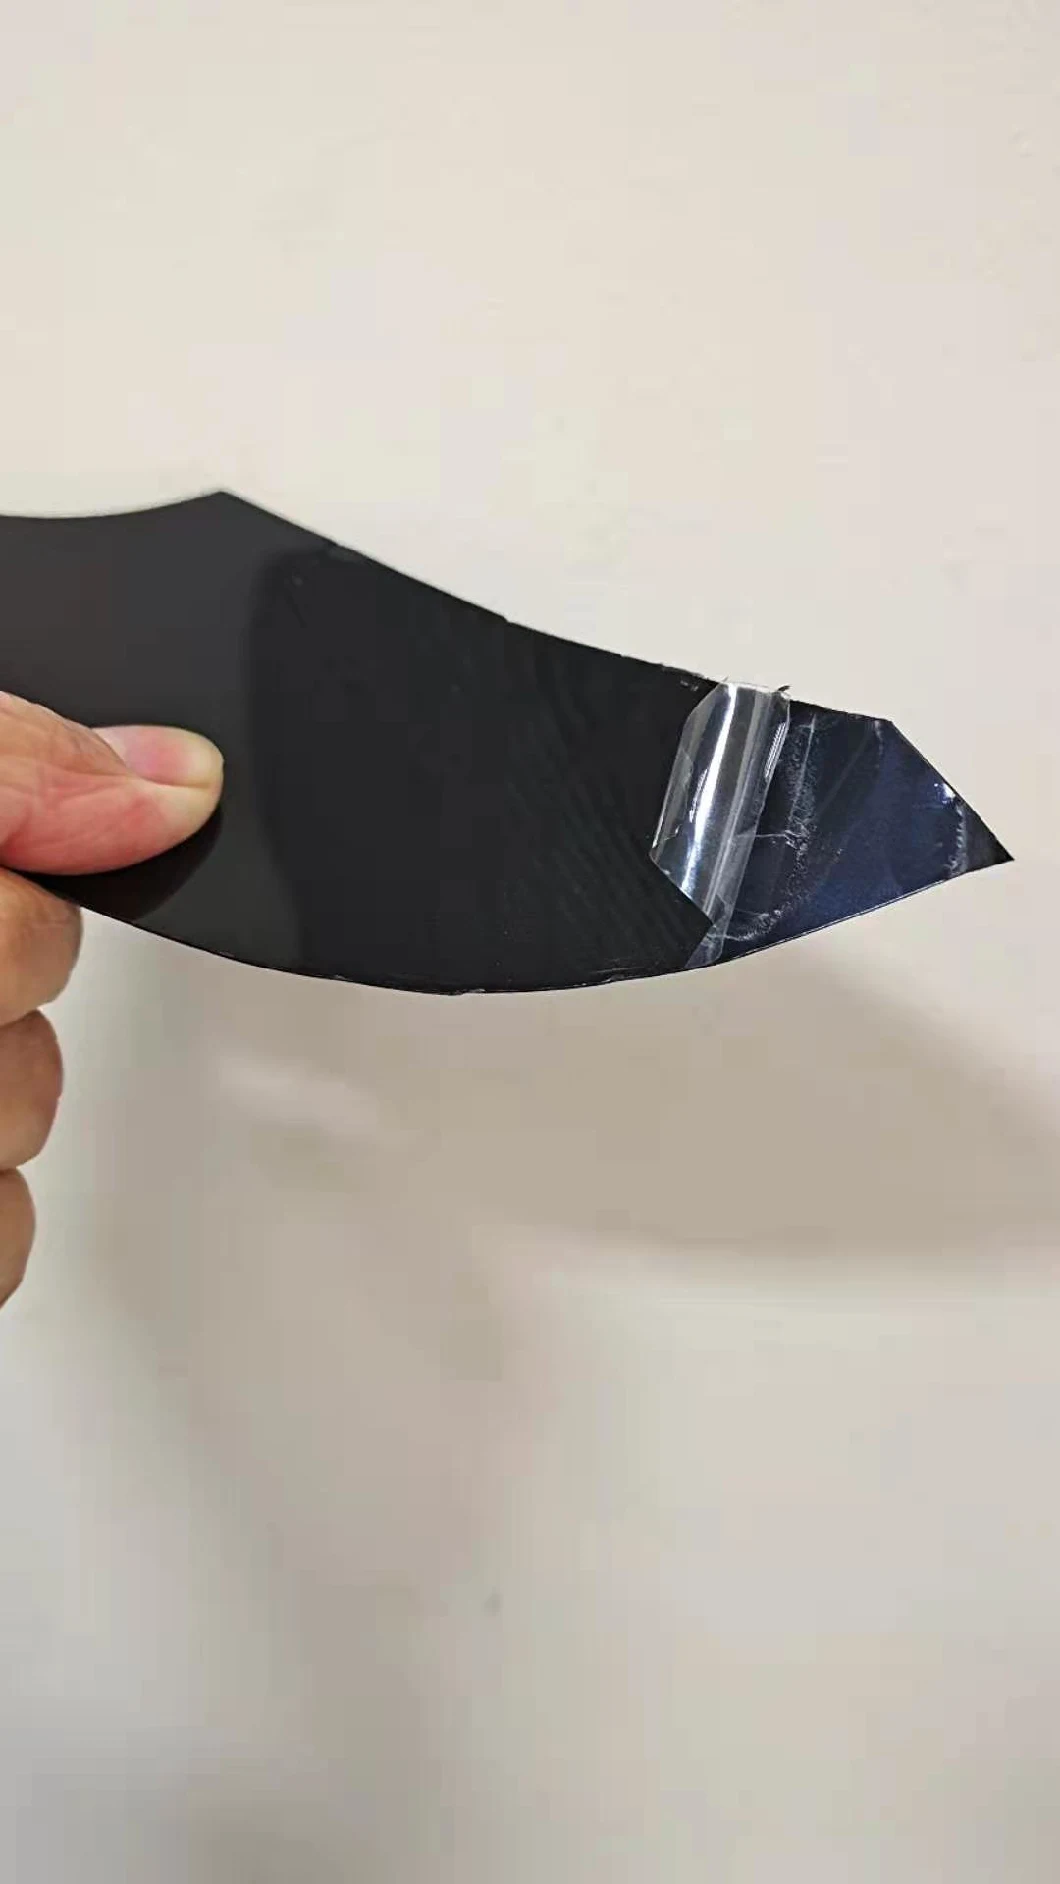 Black Clear PP Vacuum Skin Packaging Film of Foods in Cpet or PP Trays